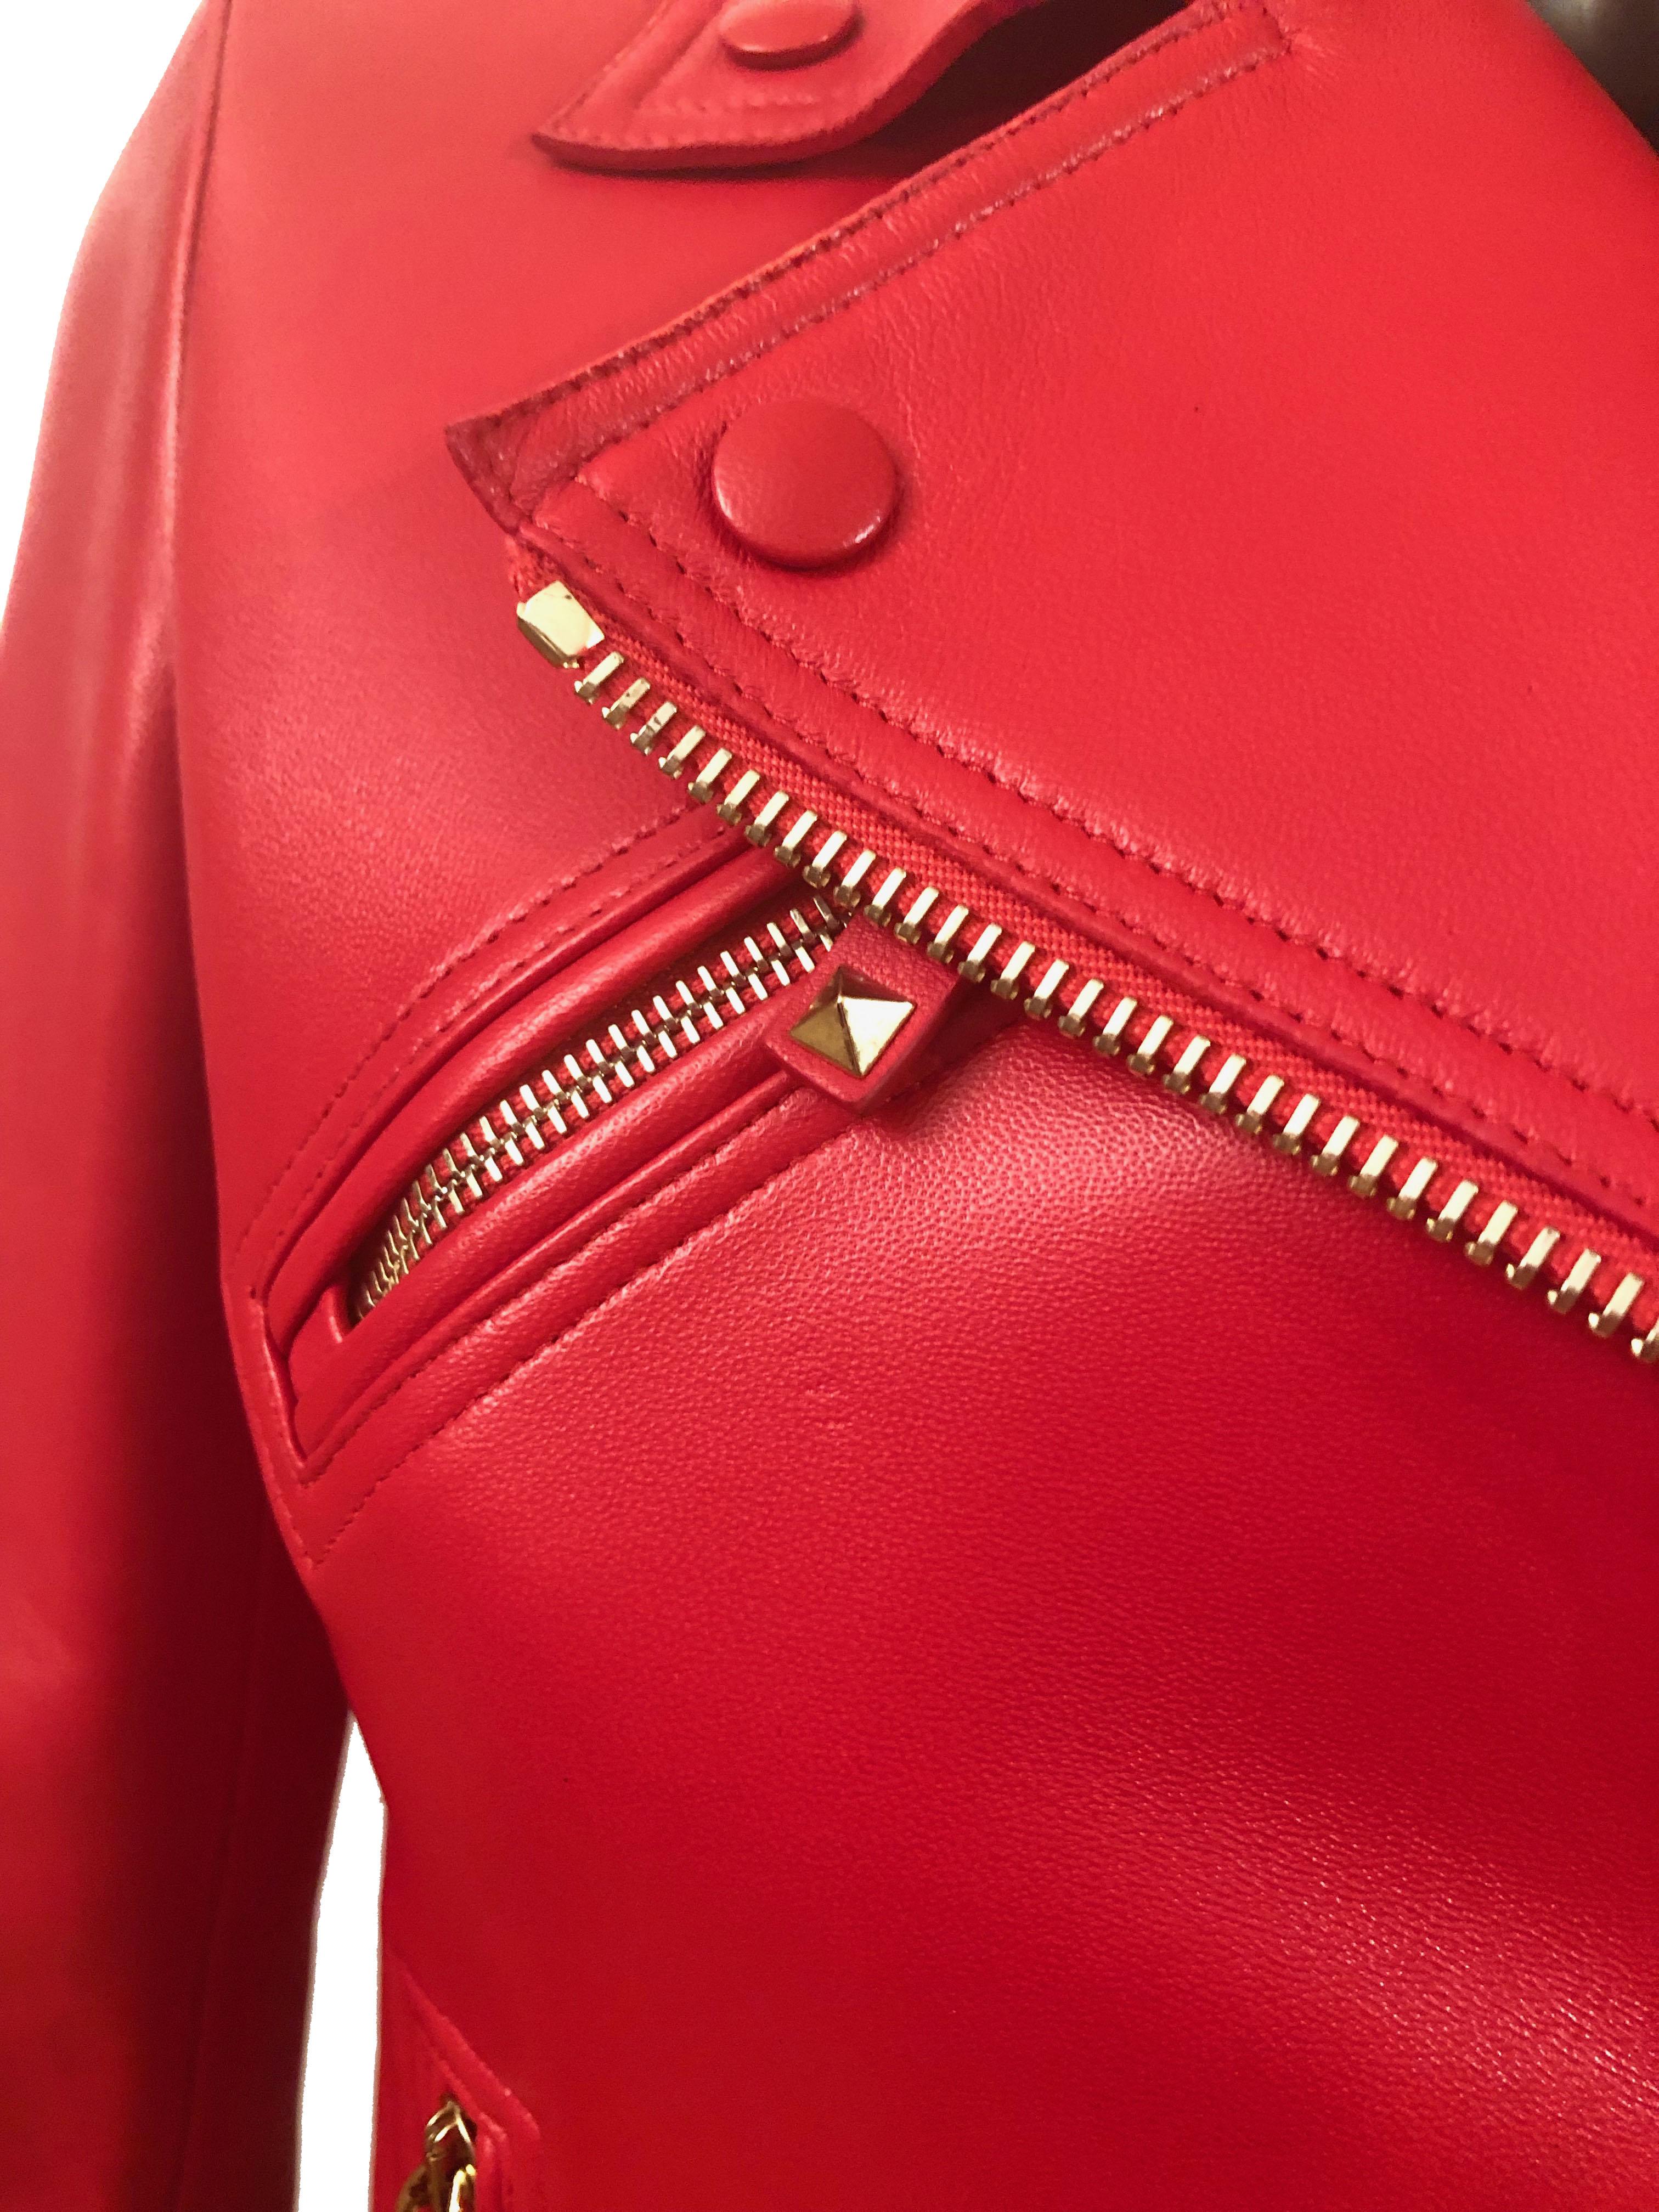 rouge leather jacket